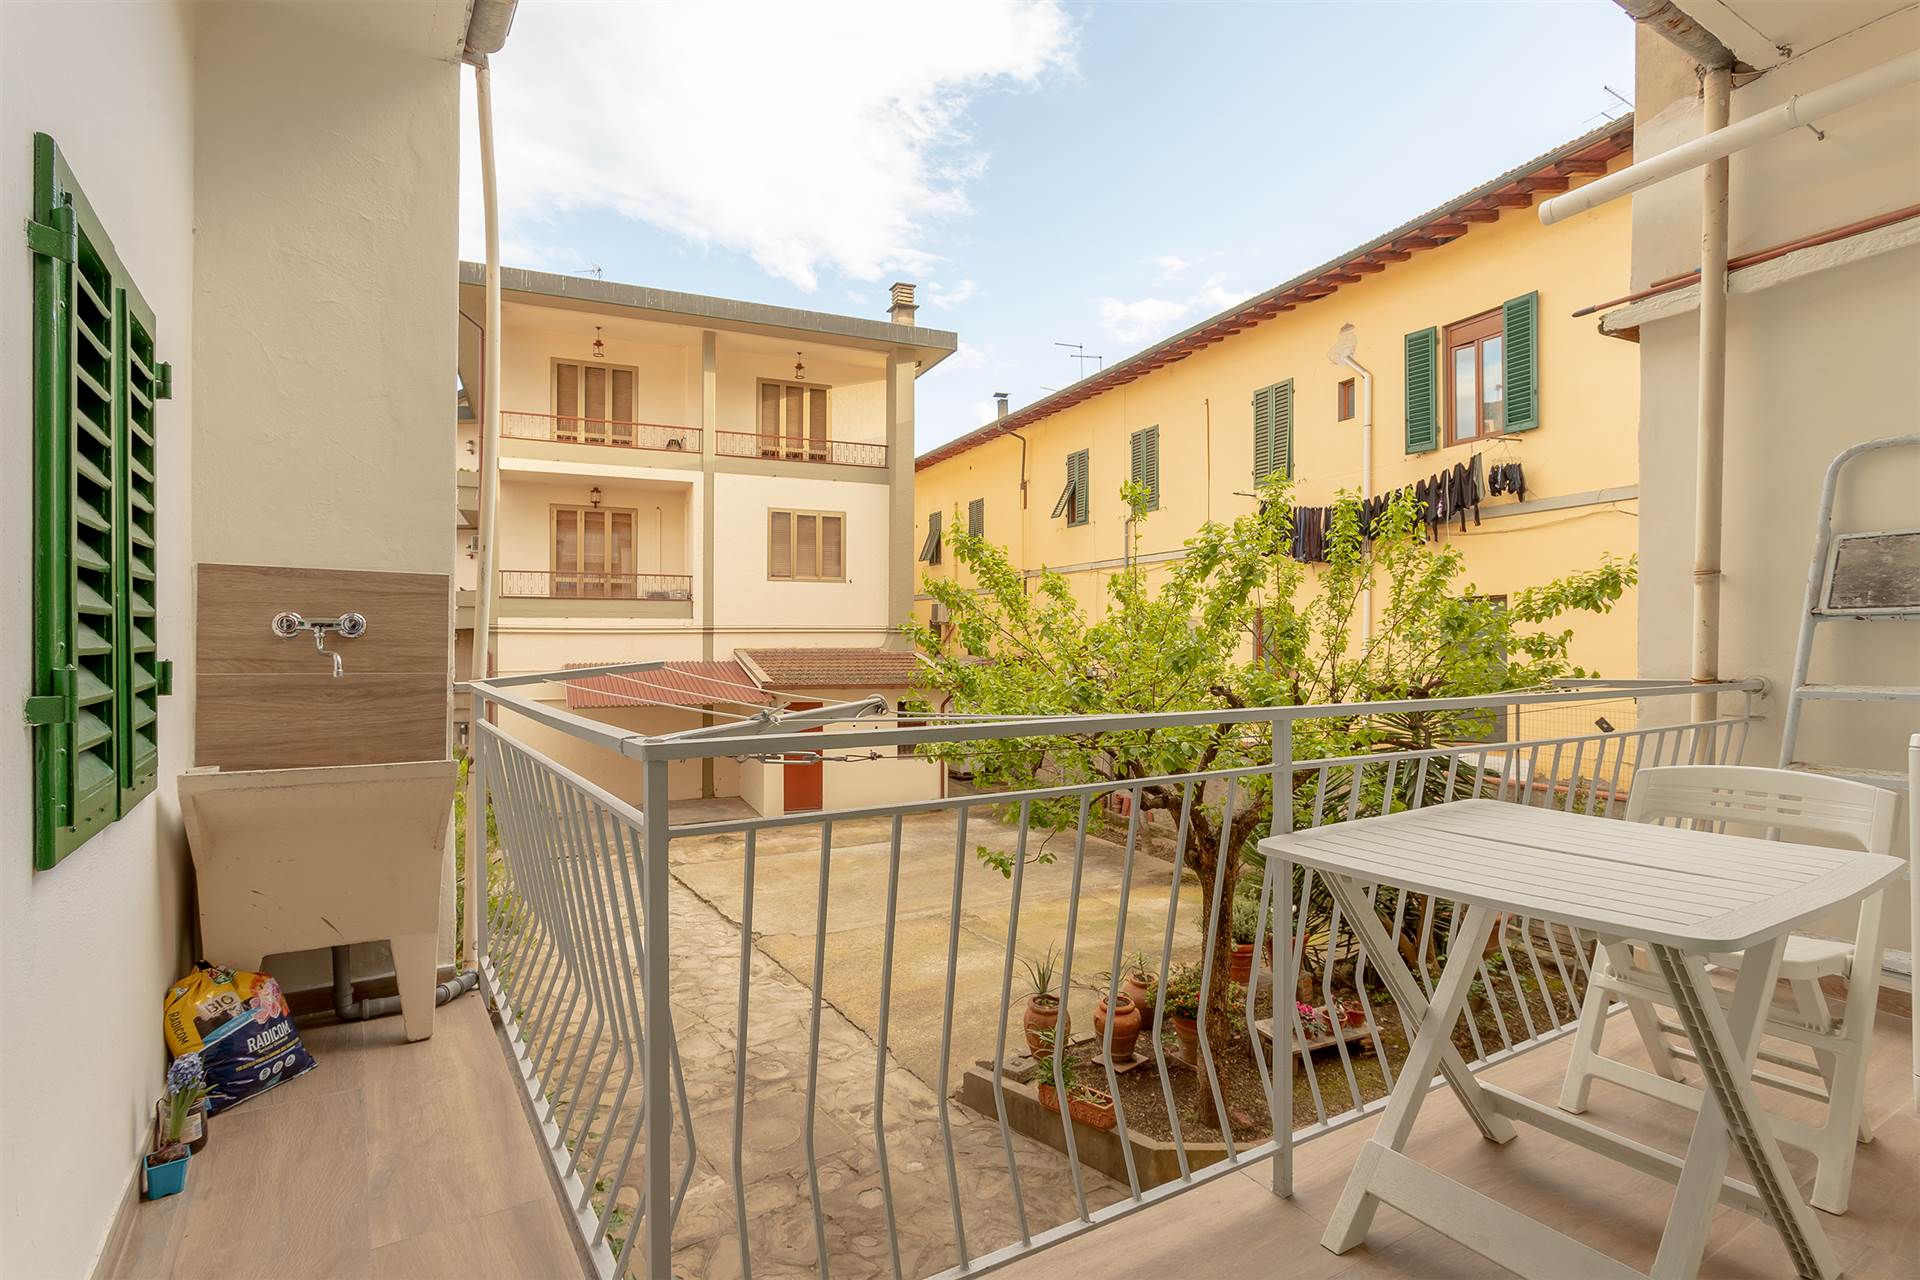 Appartamento in vendita a Signa, 2 locali, zona Località: STAZIONE, prezzo € 125.000 | PortaleAgenzieImmobiliari.it